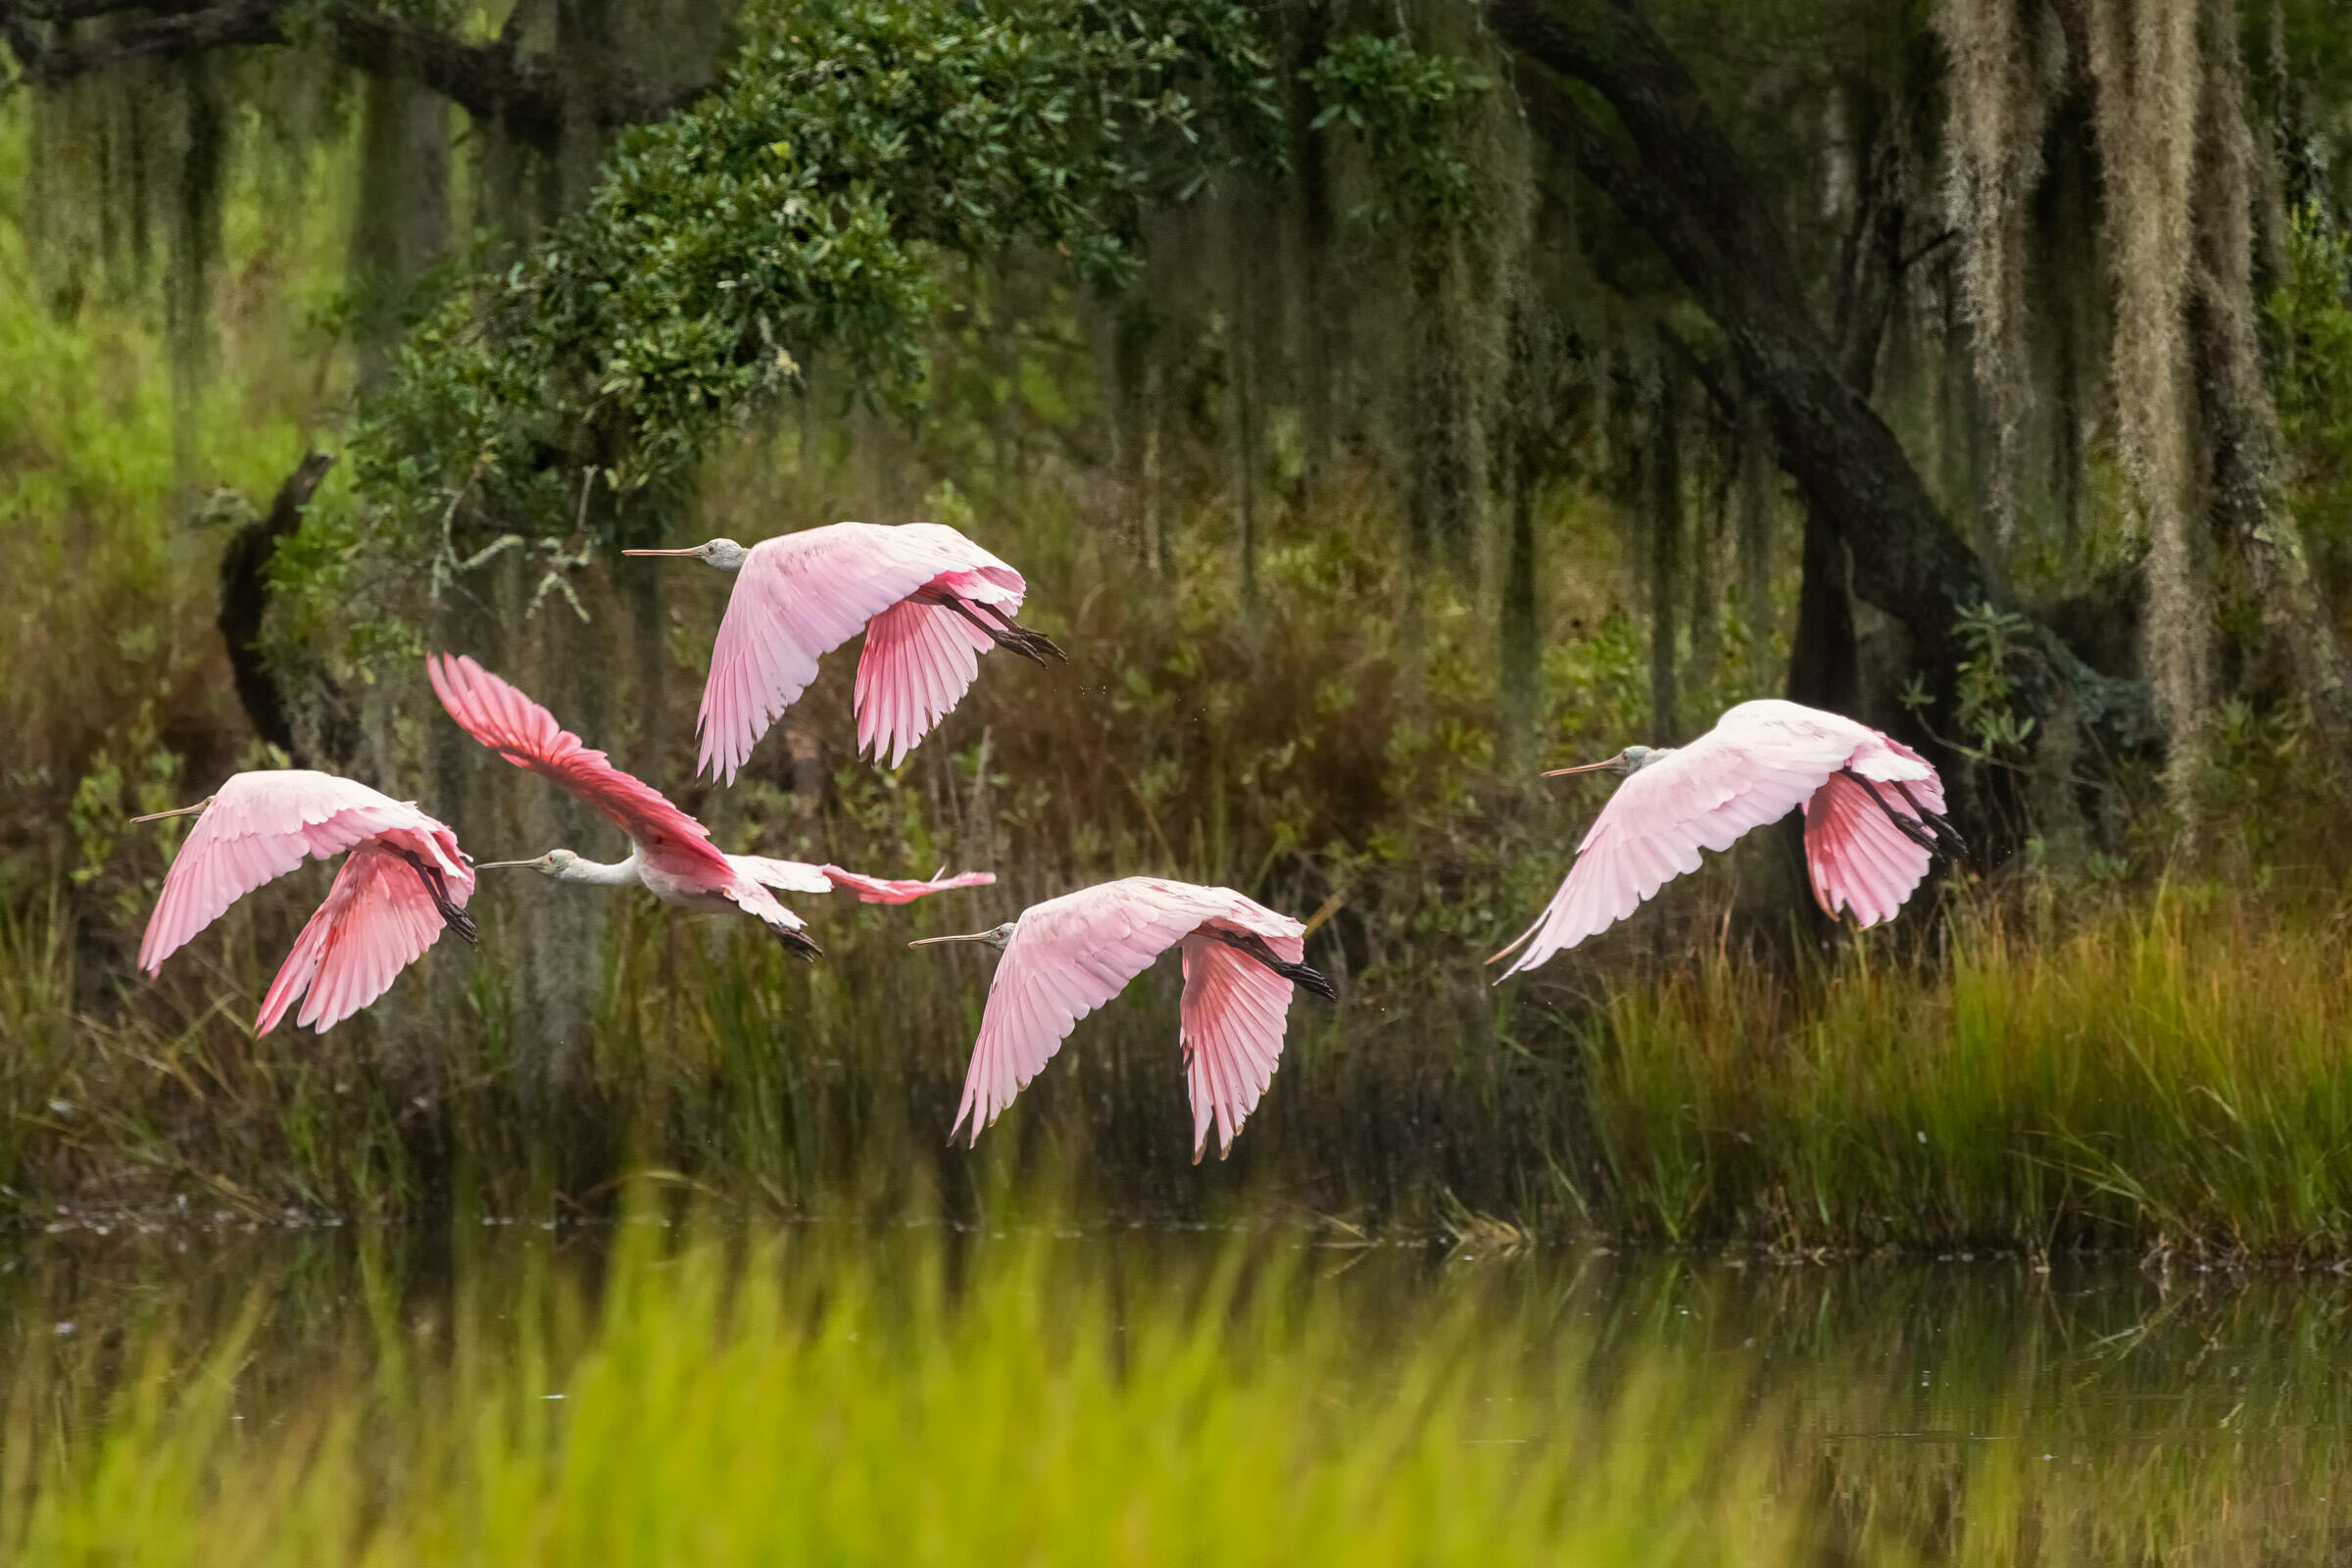 Roseate Spoonbills in flight over a marsh.